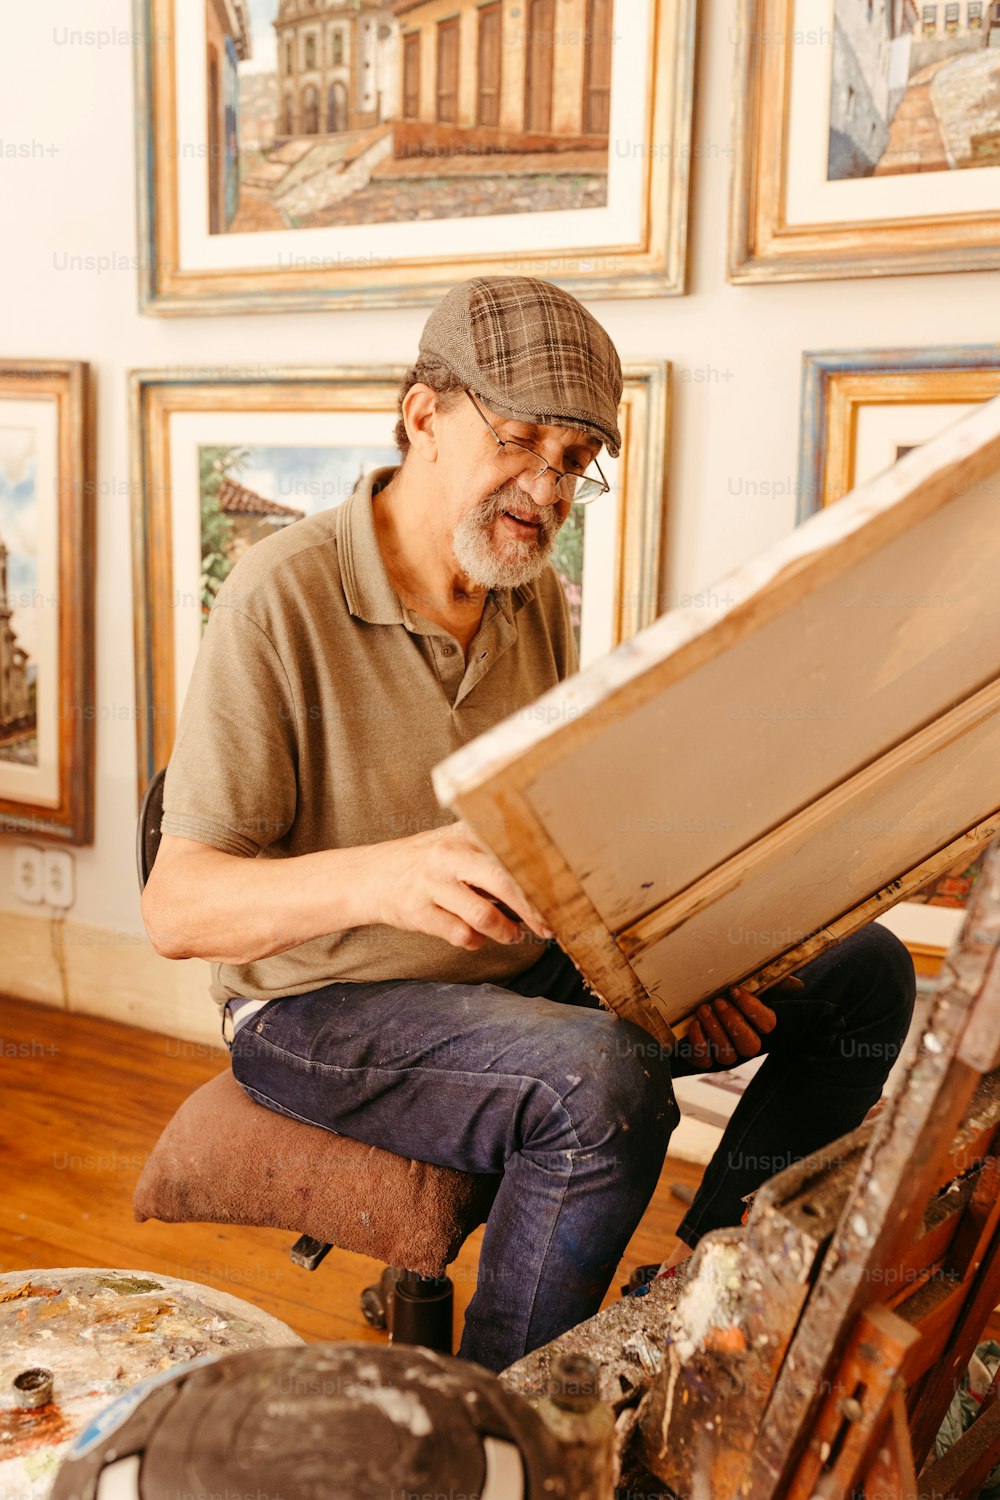 Un homme assis sur un tabouret travaillant sur une œuvre d’art